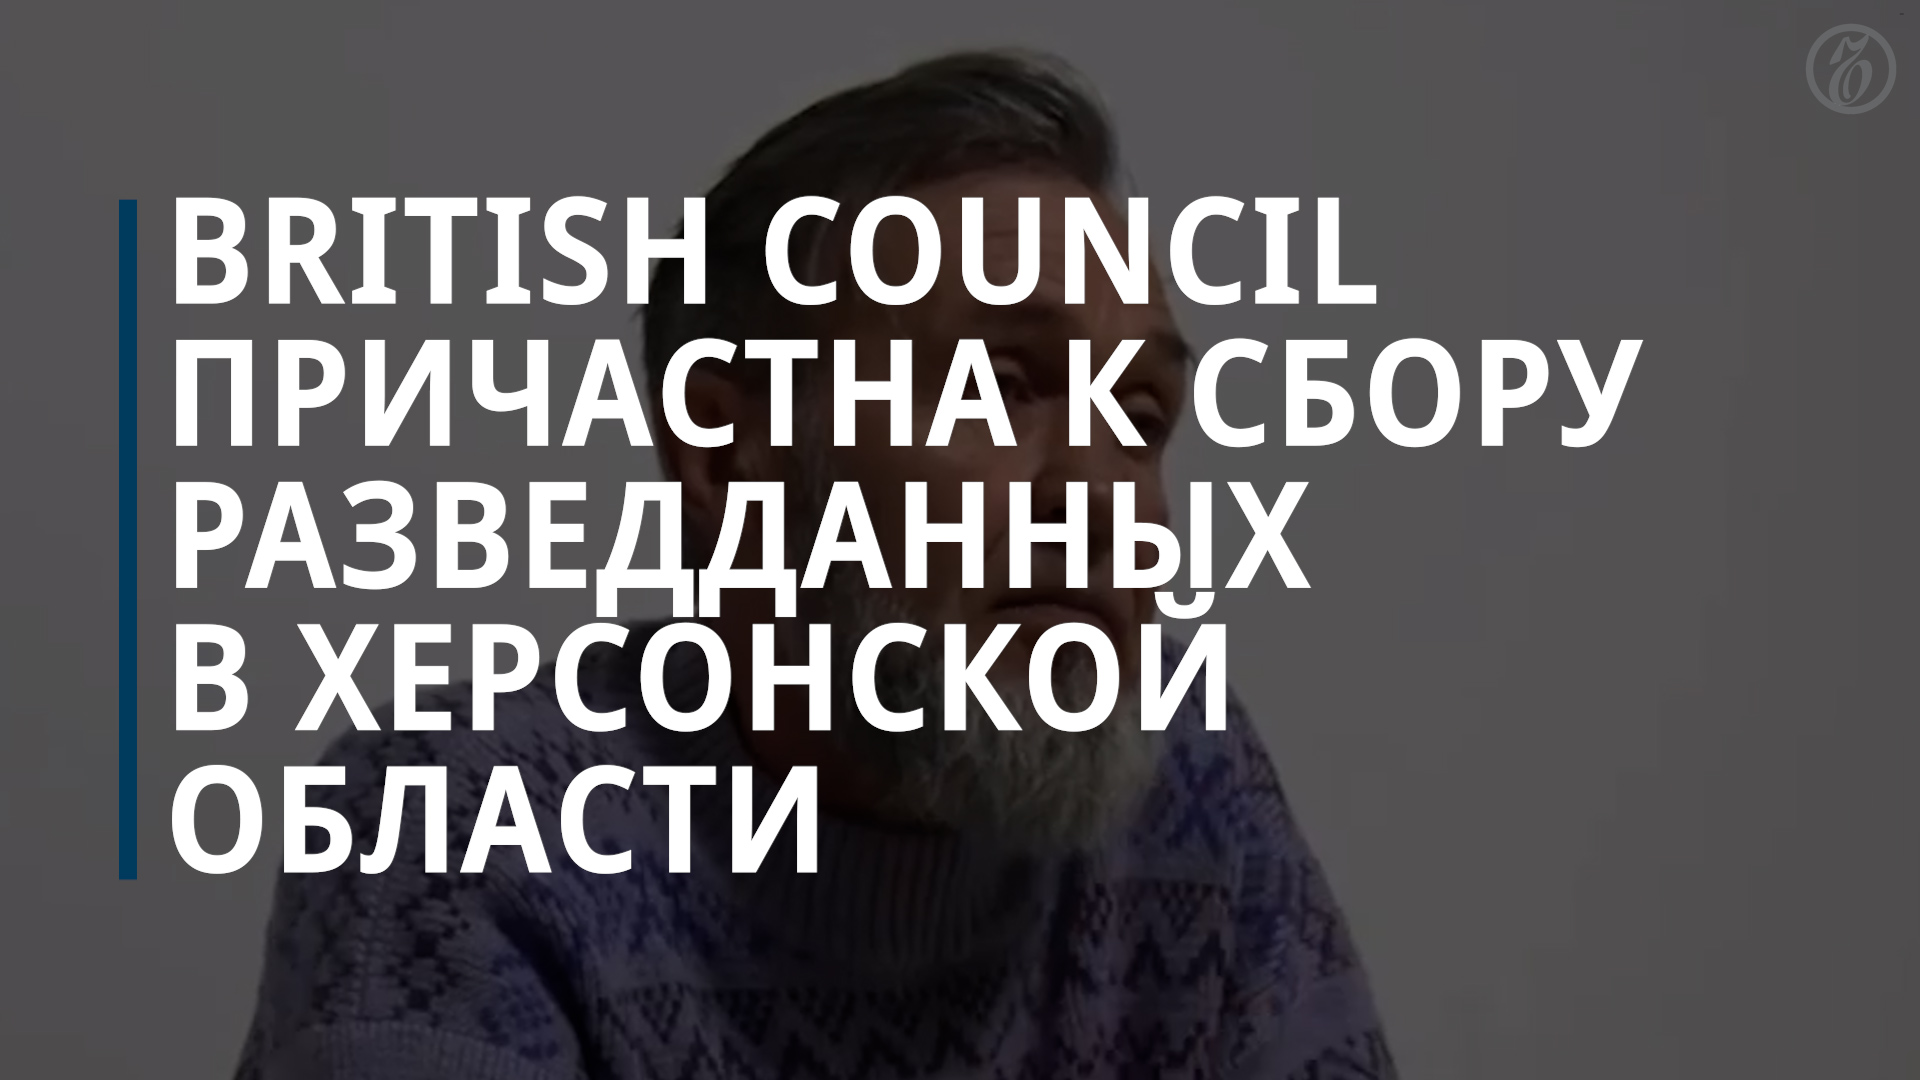 ФСБ обвинила «Британский совет» в разведдеятельности в интересах Украины